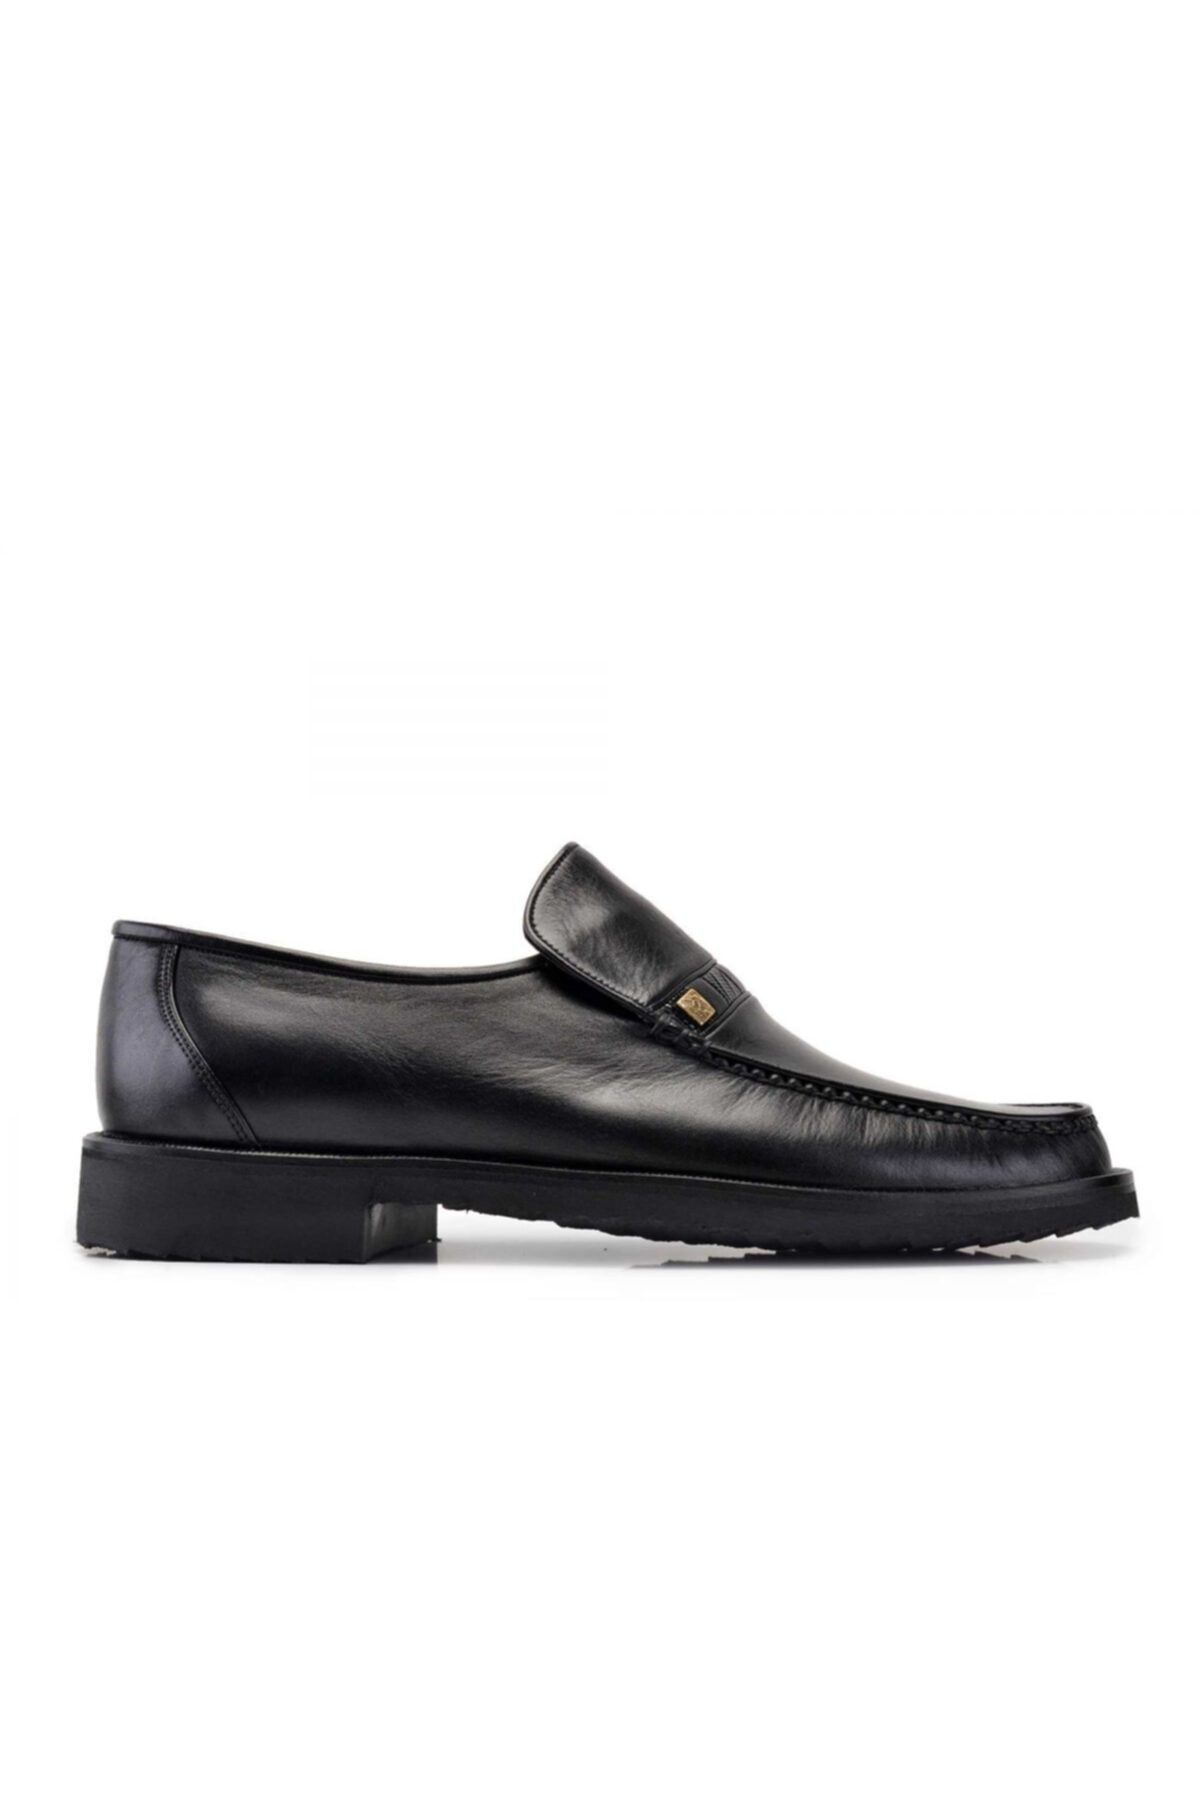 Nevzat Onay Hakiki Deri Siyah Günlük Loafer Erkek Ayakkabı -10532-